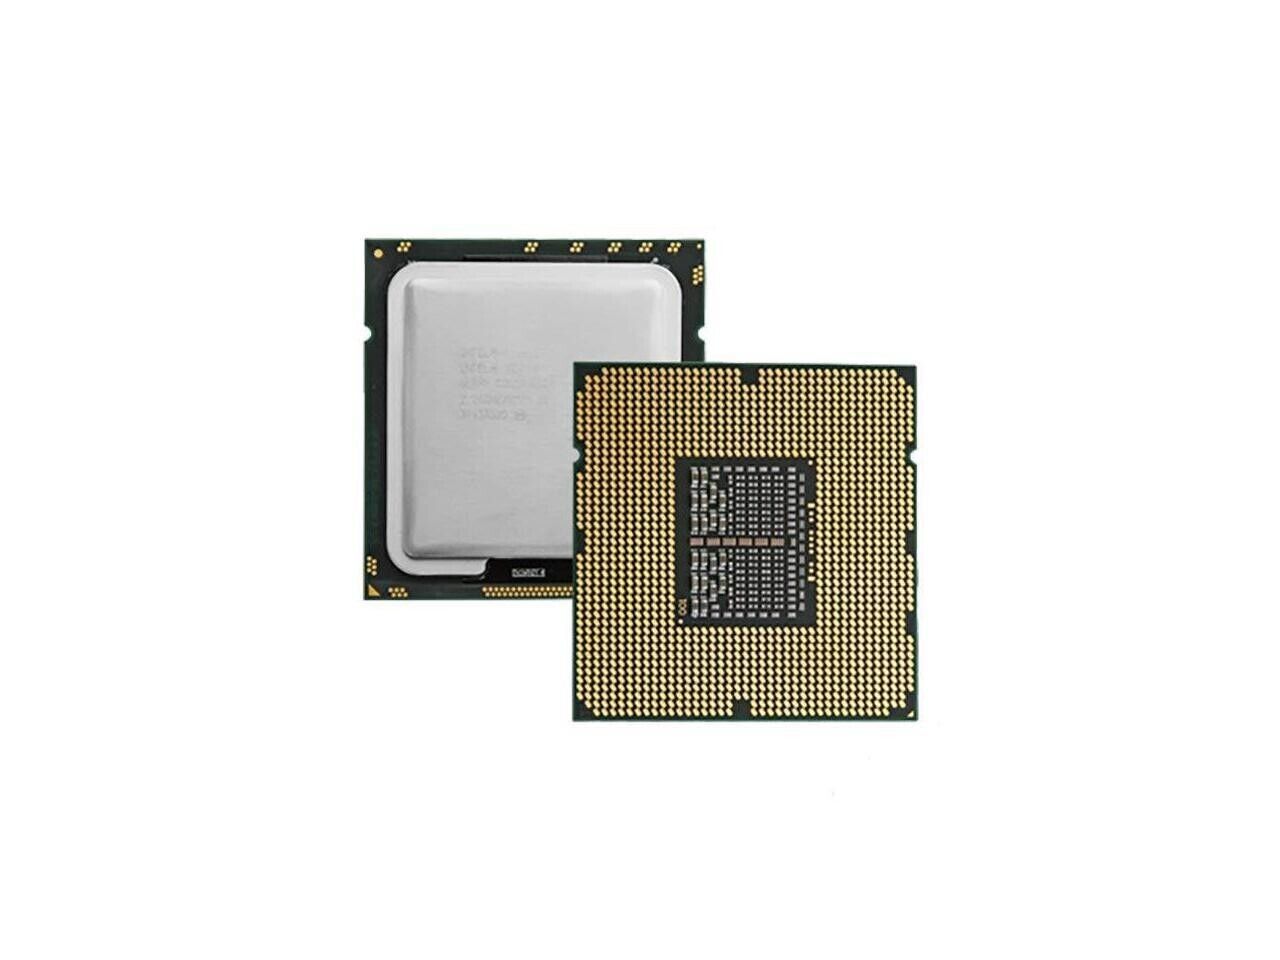 Lot of 4 Intel Xeon E5-4640 Processor @ 2.40GHz 20MB Octa-Core SR0QT LGA2011 CPU